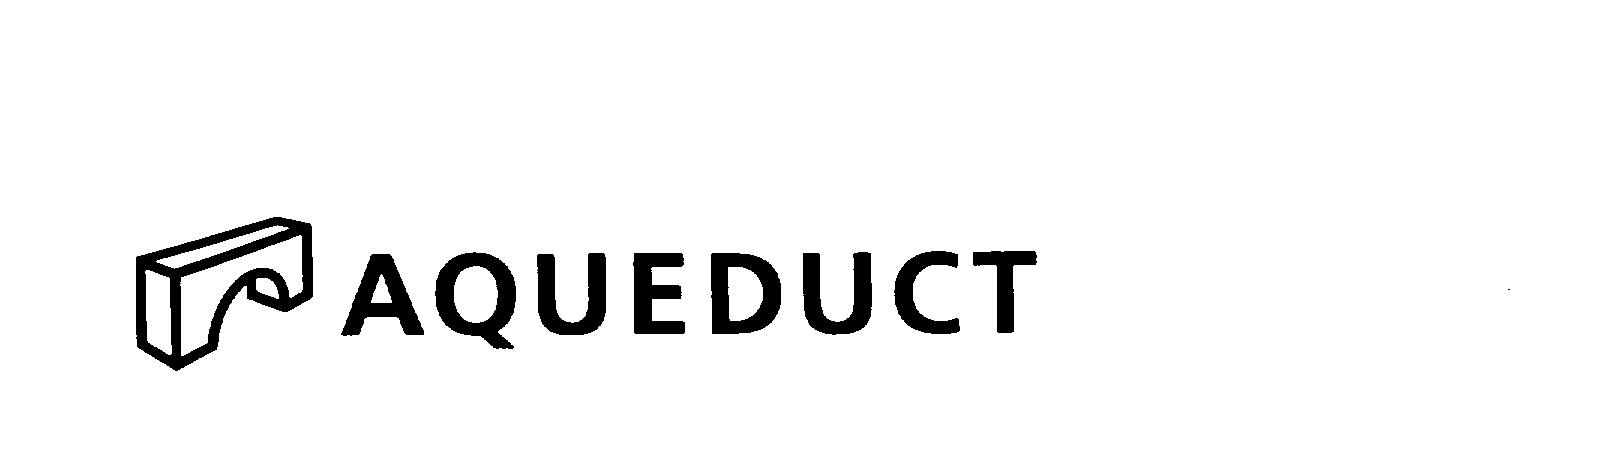 Trademark Logo AQUEDUCT